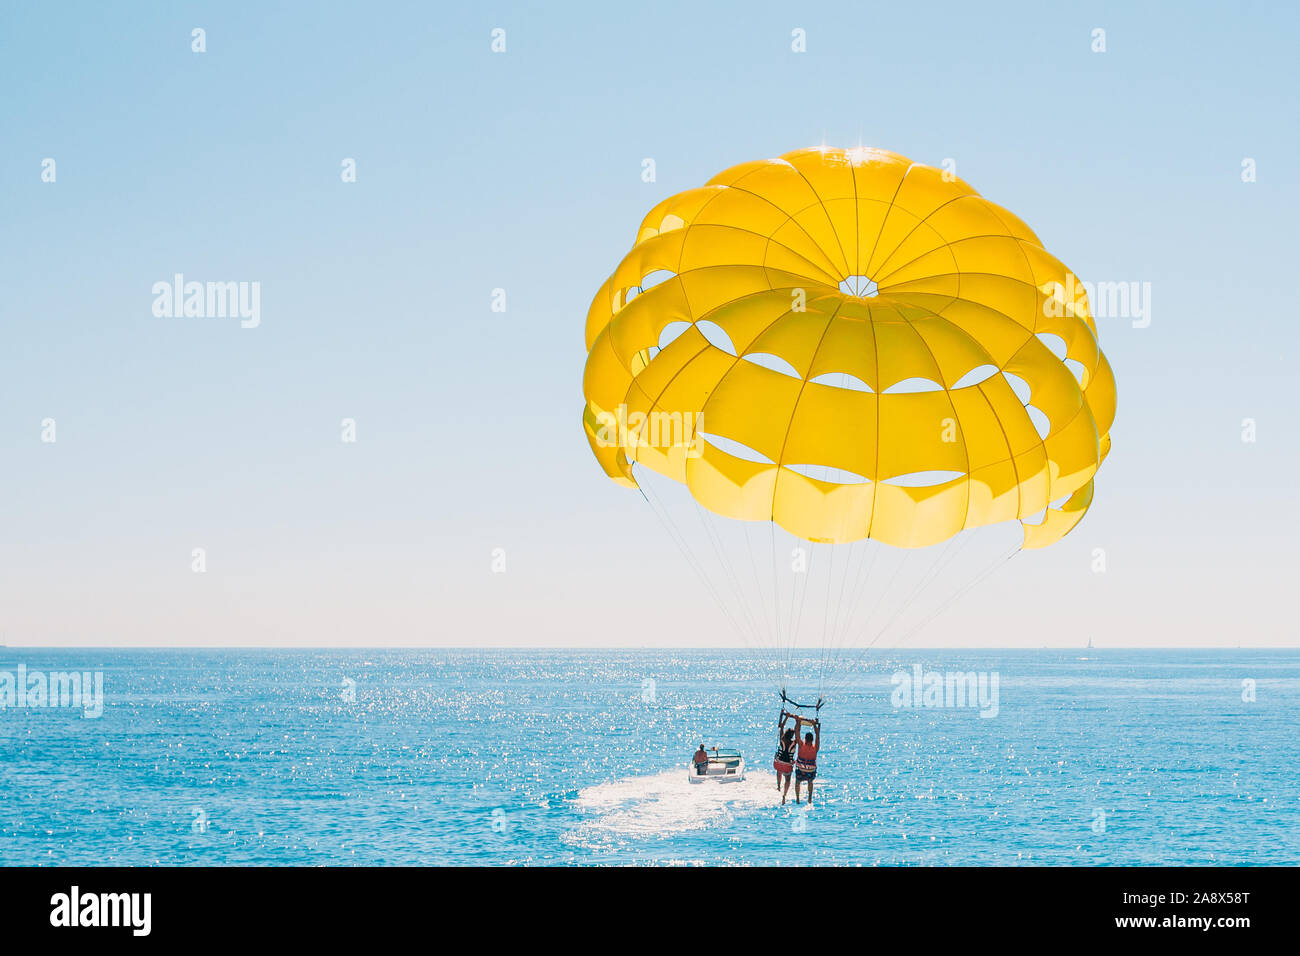 Passatempo divertente in mare - parasailing con persone legate ad una barca Foto Stock